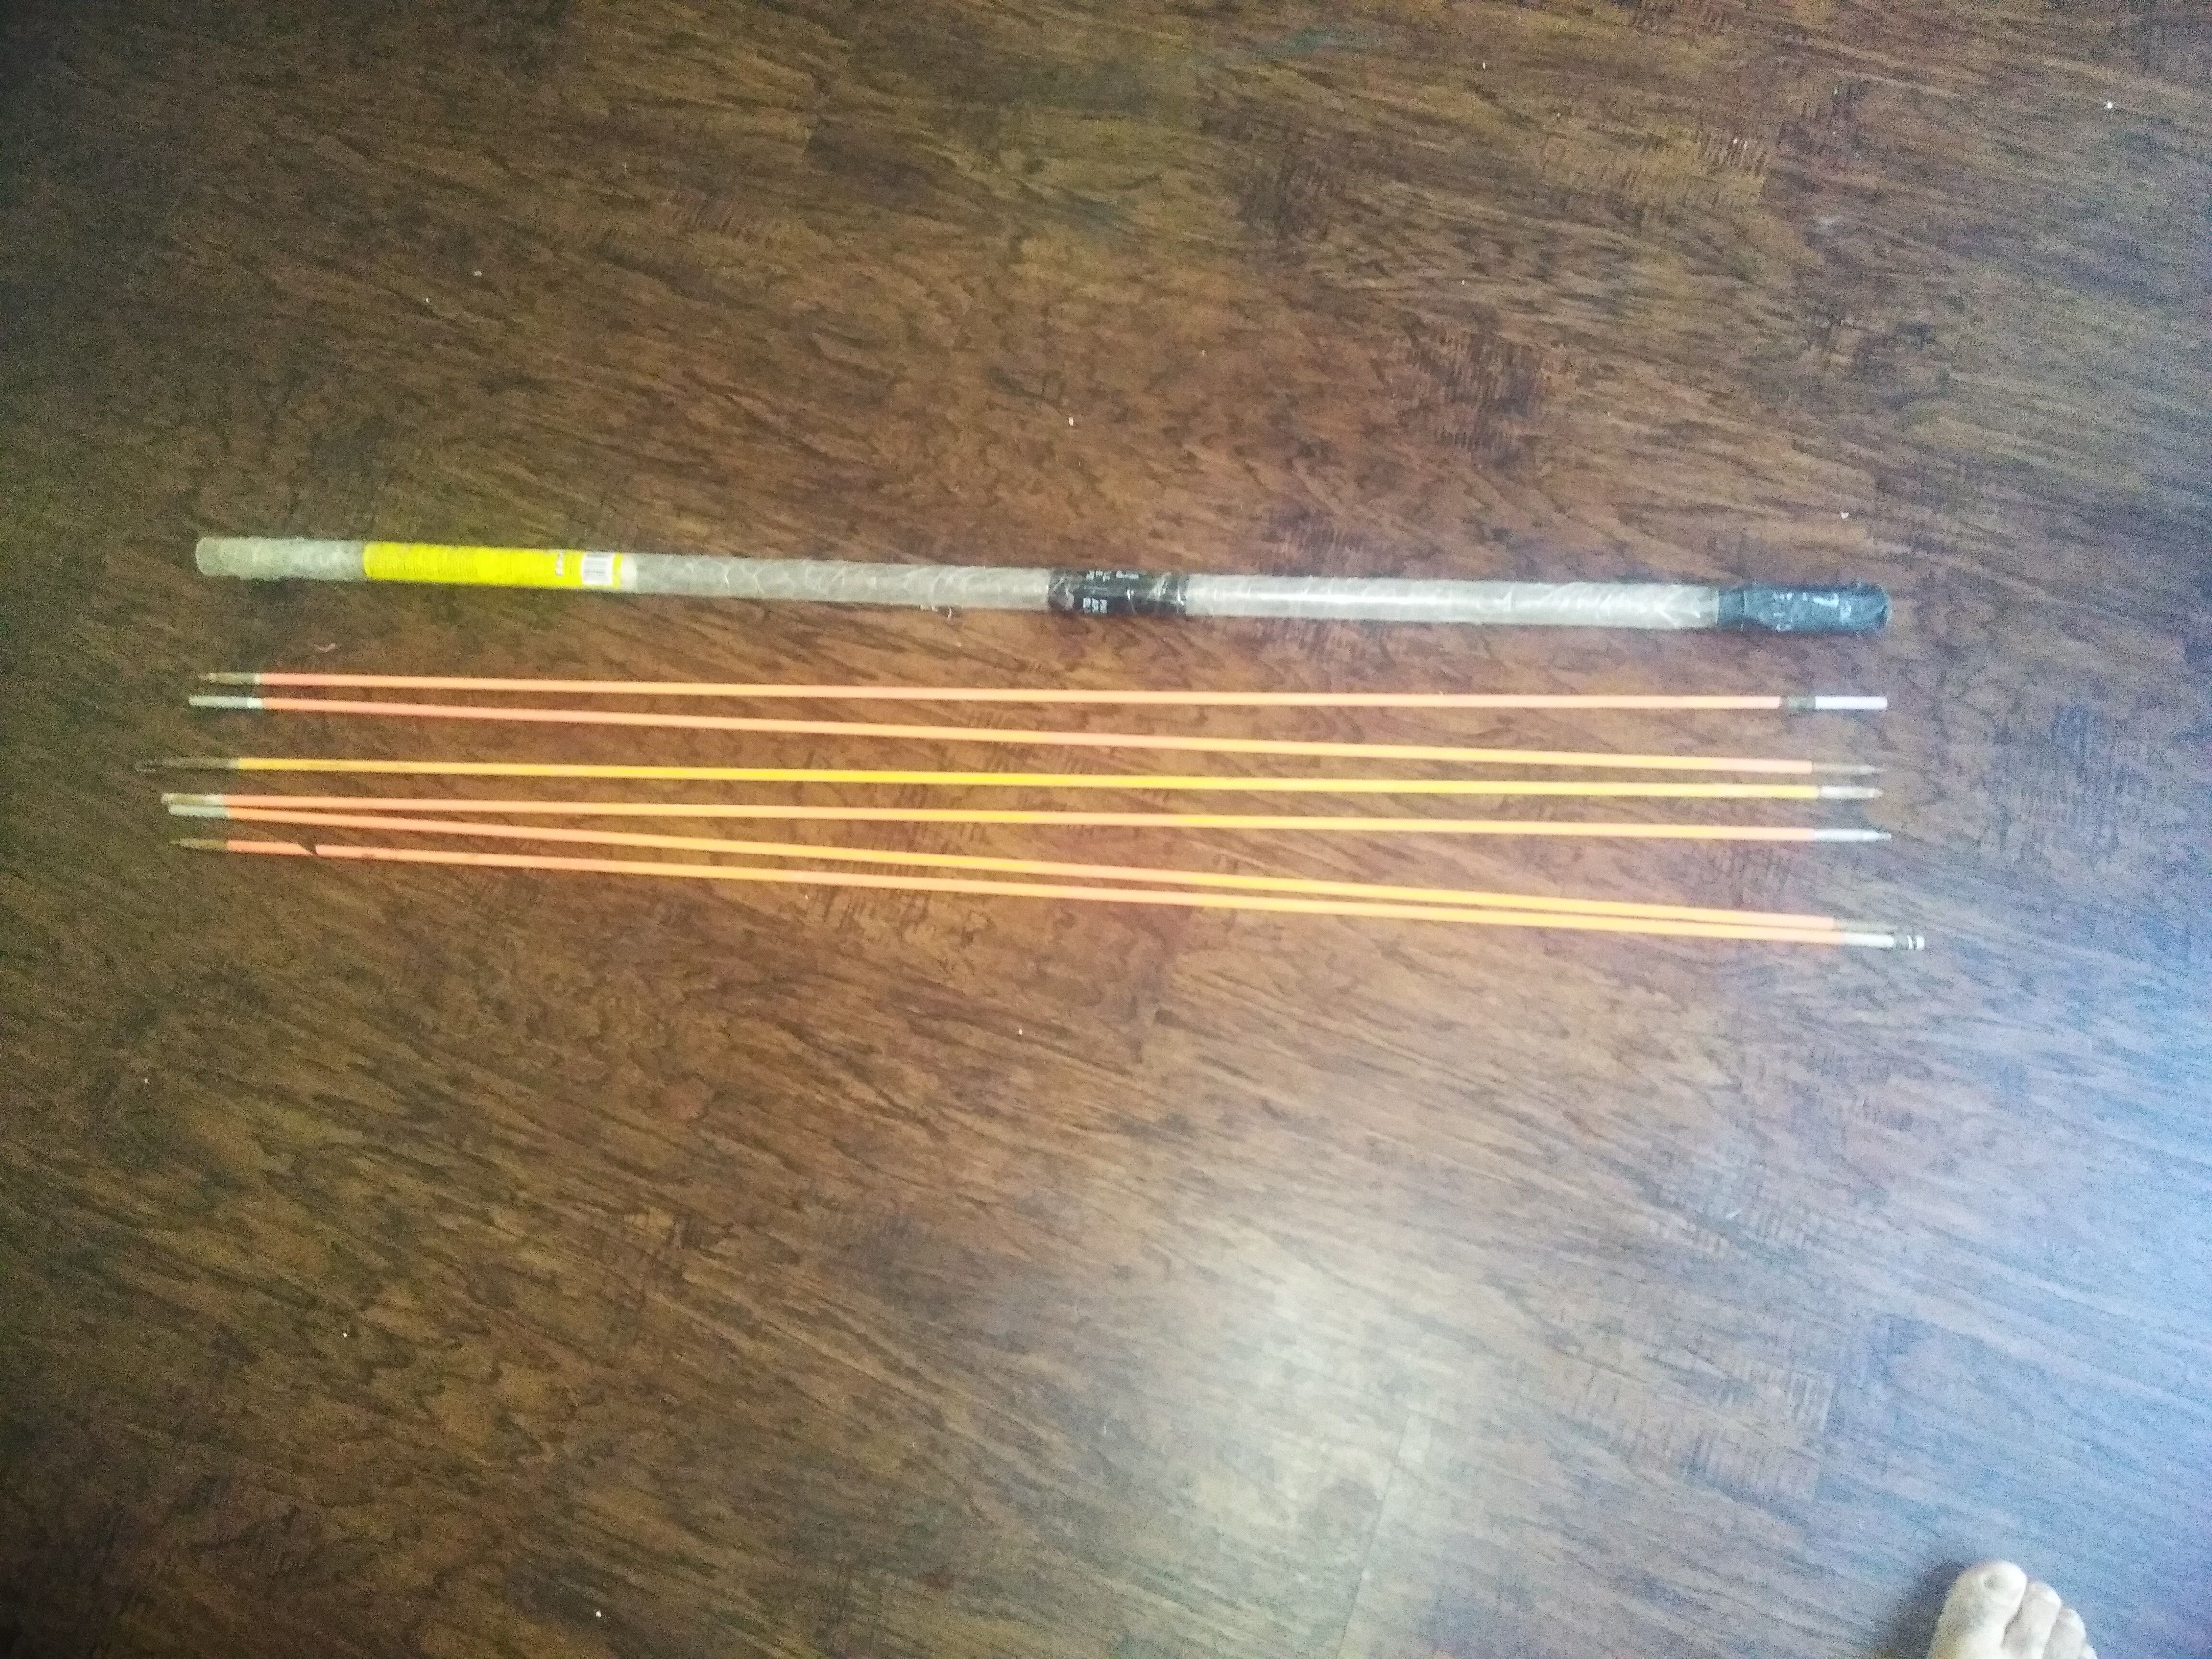 Klein tool rod fish $35